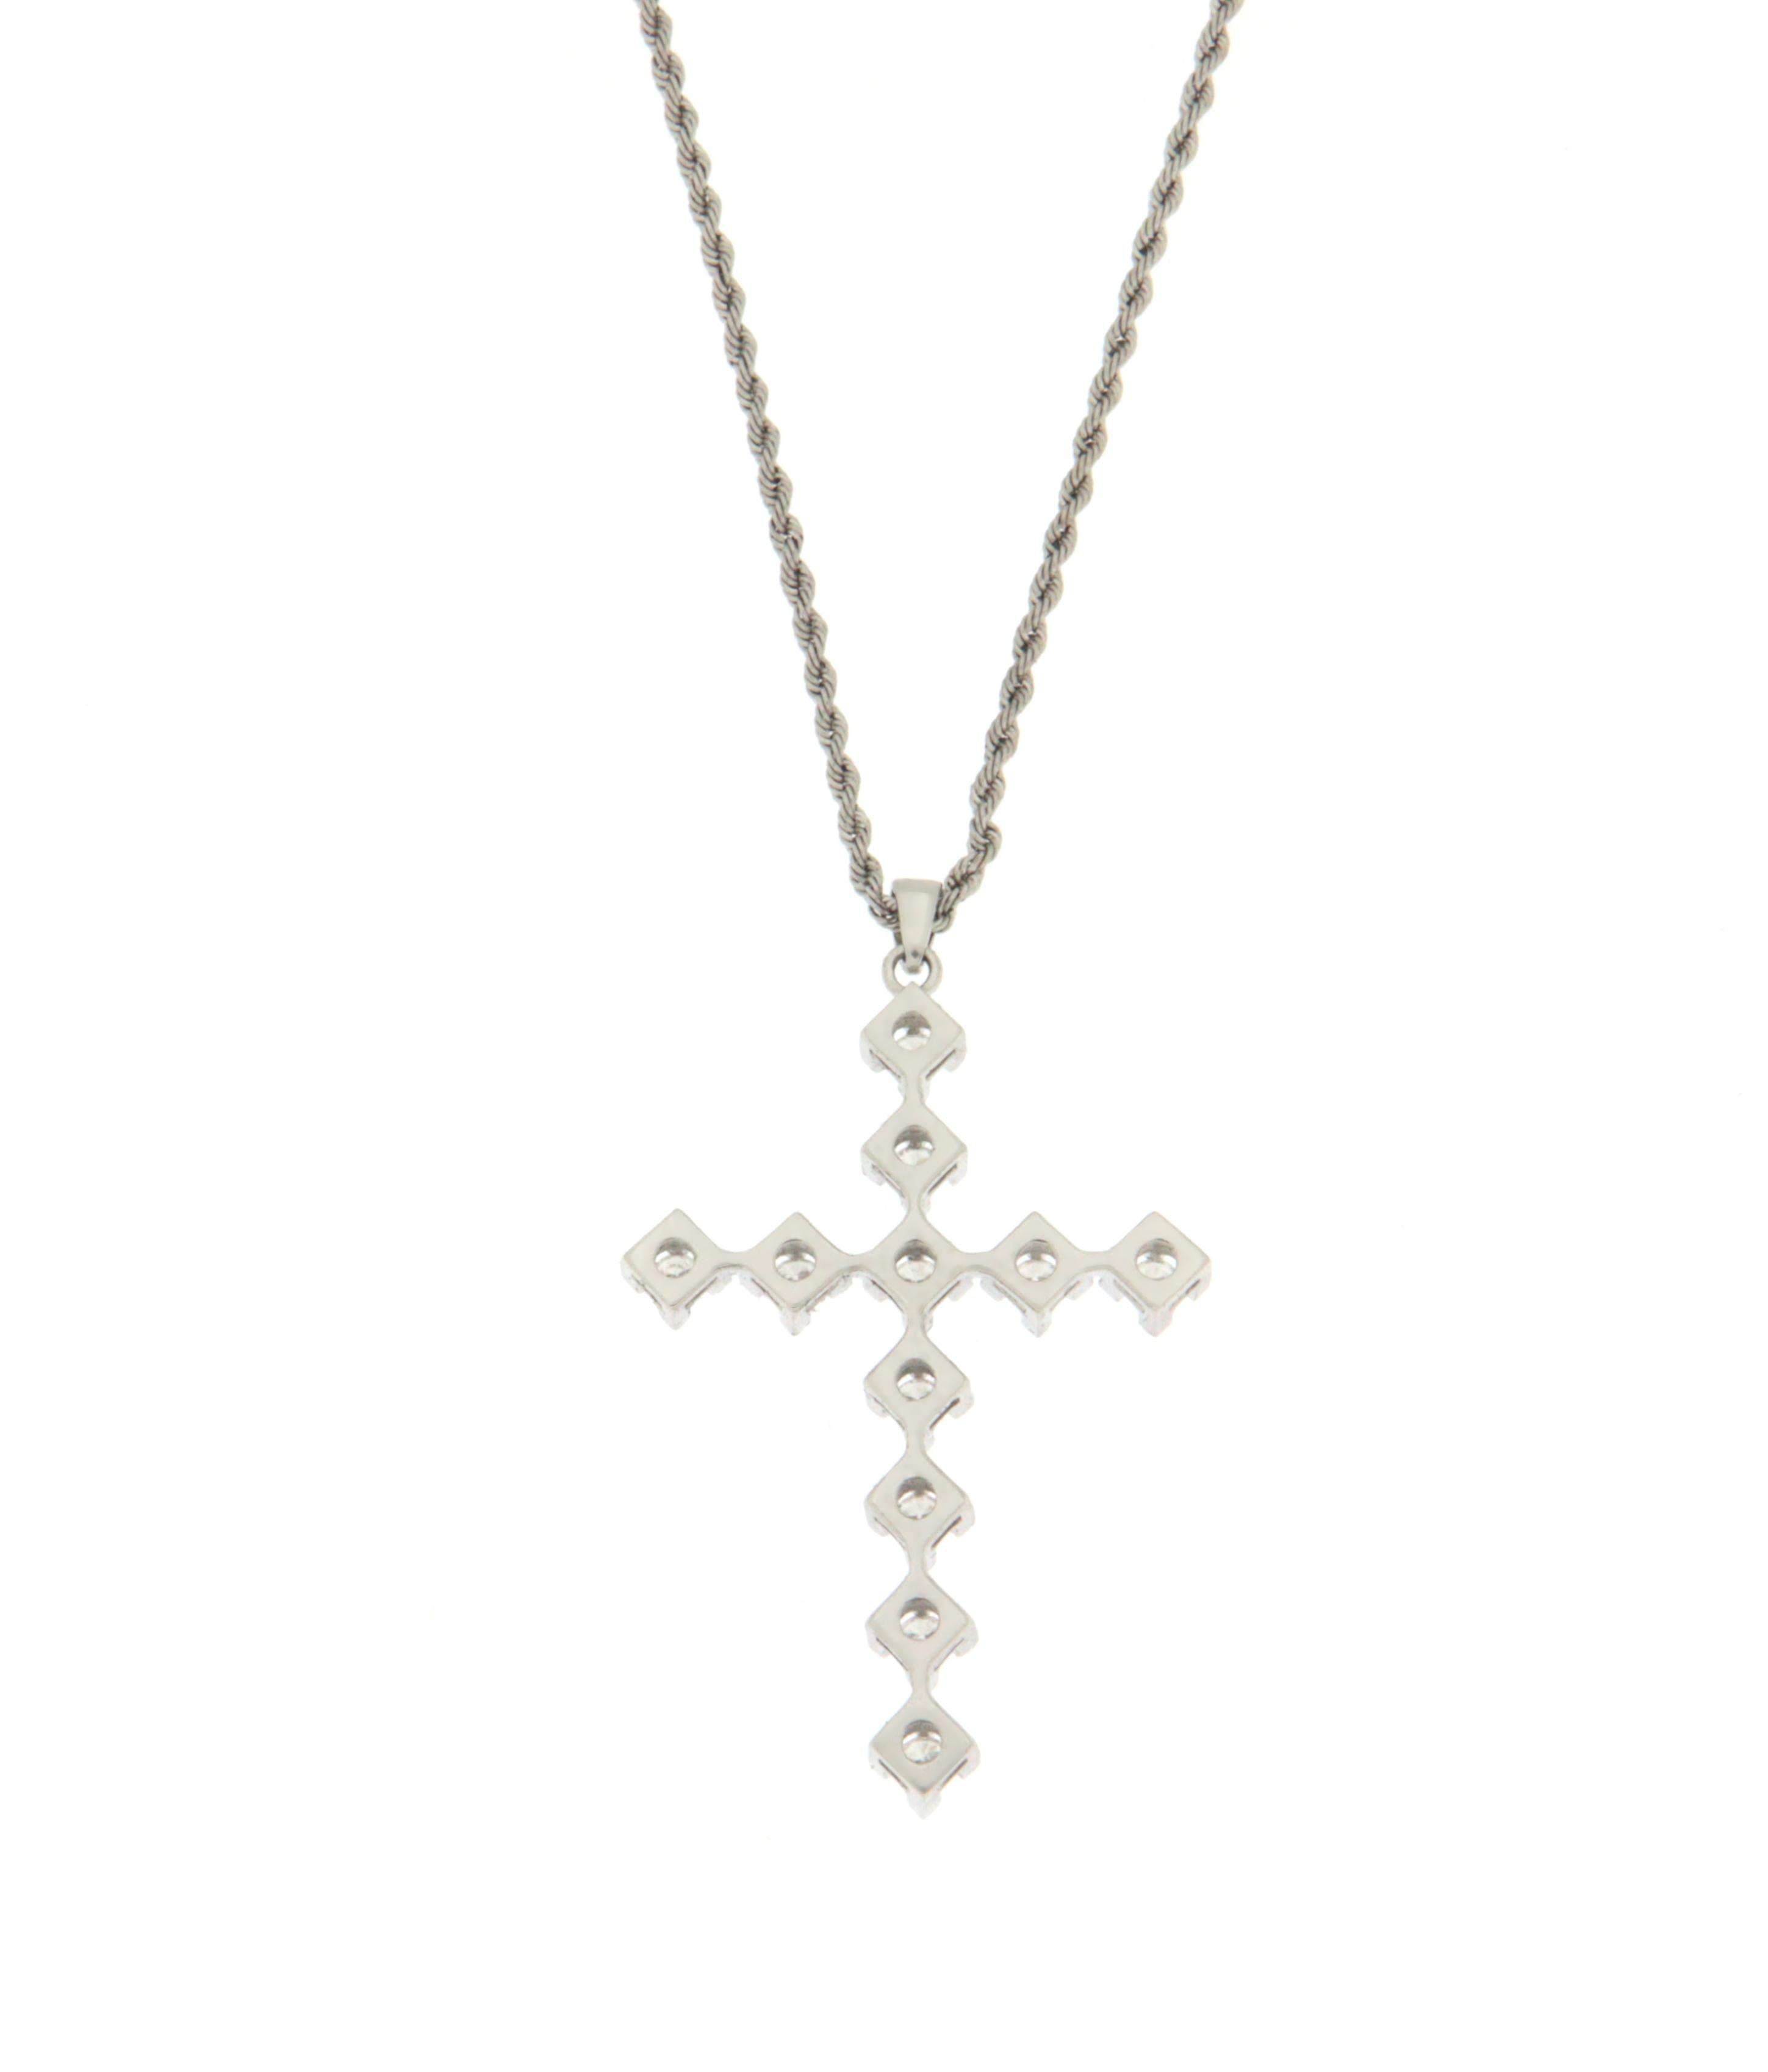 Brilliant Cut Diamonds 18 Karat White Gold Cross Pendant Necklace For Sale